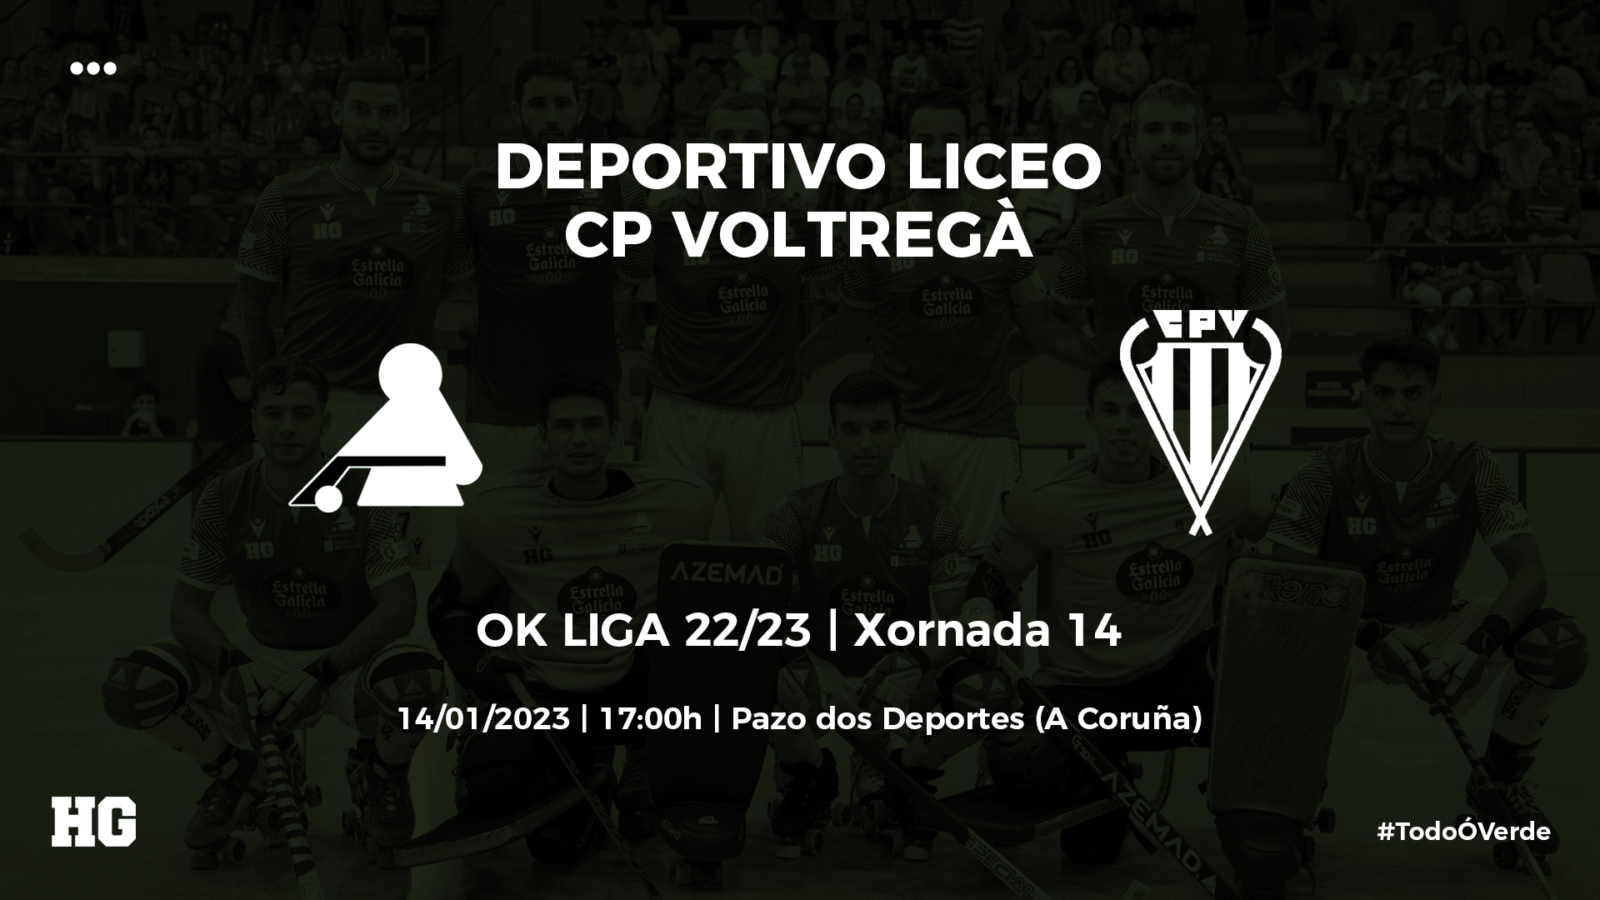 Entradas para el Deportivo Liceo-Voltregà (OK Liga 22/23, jornada 14)